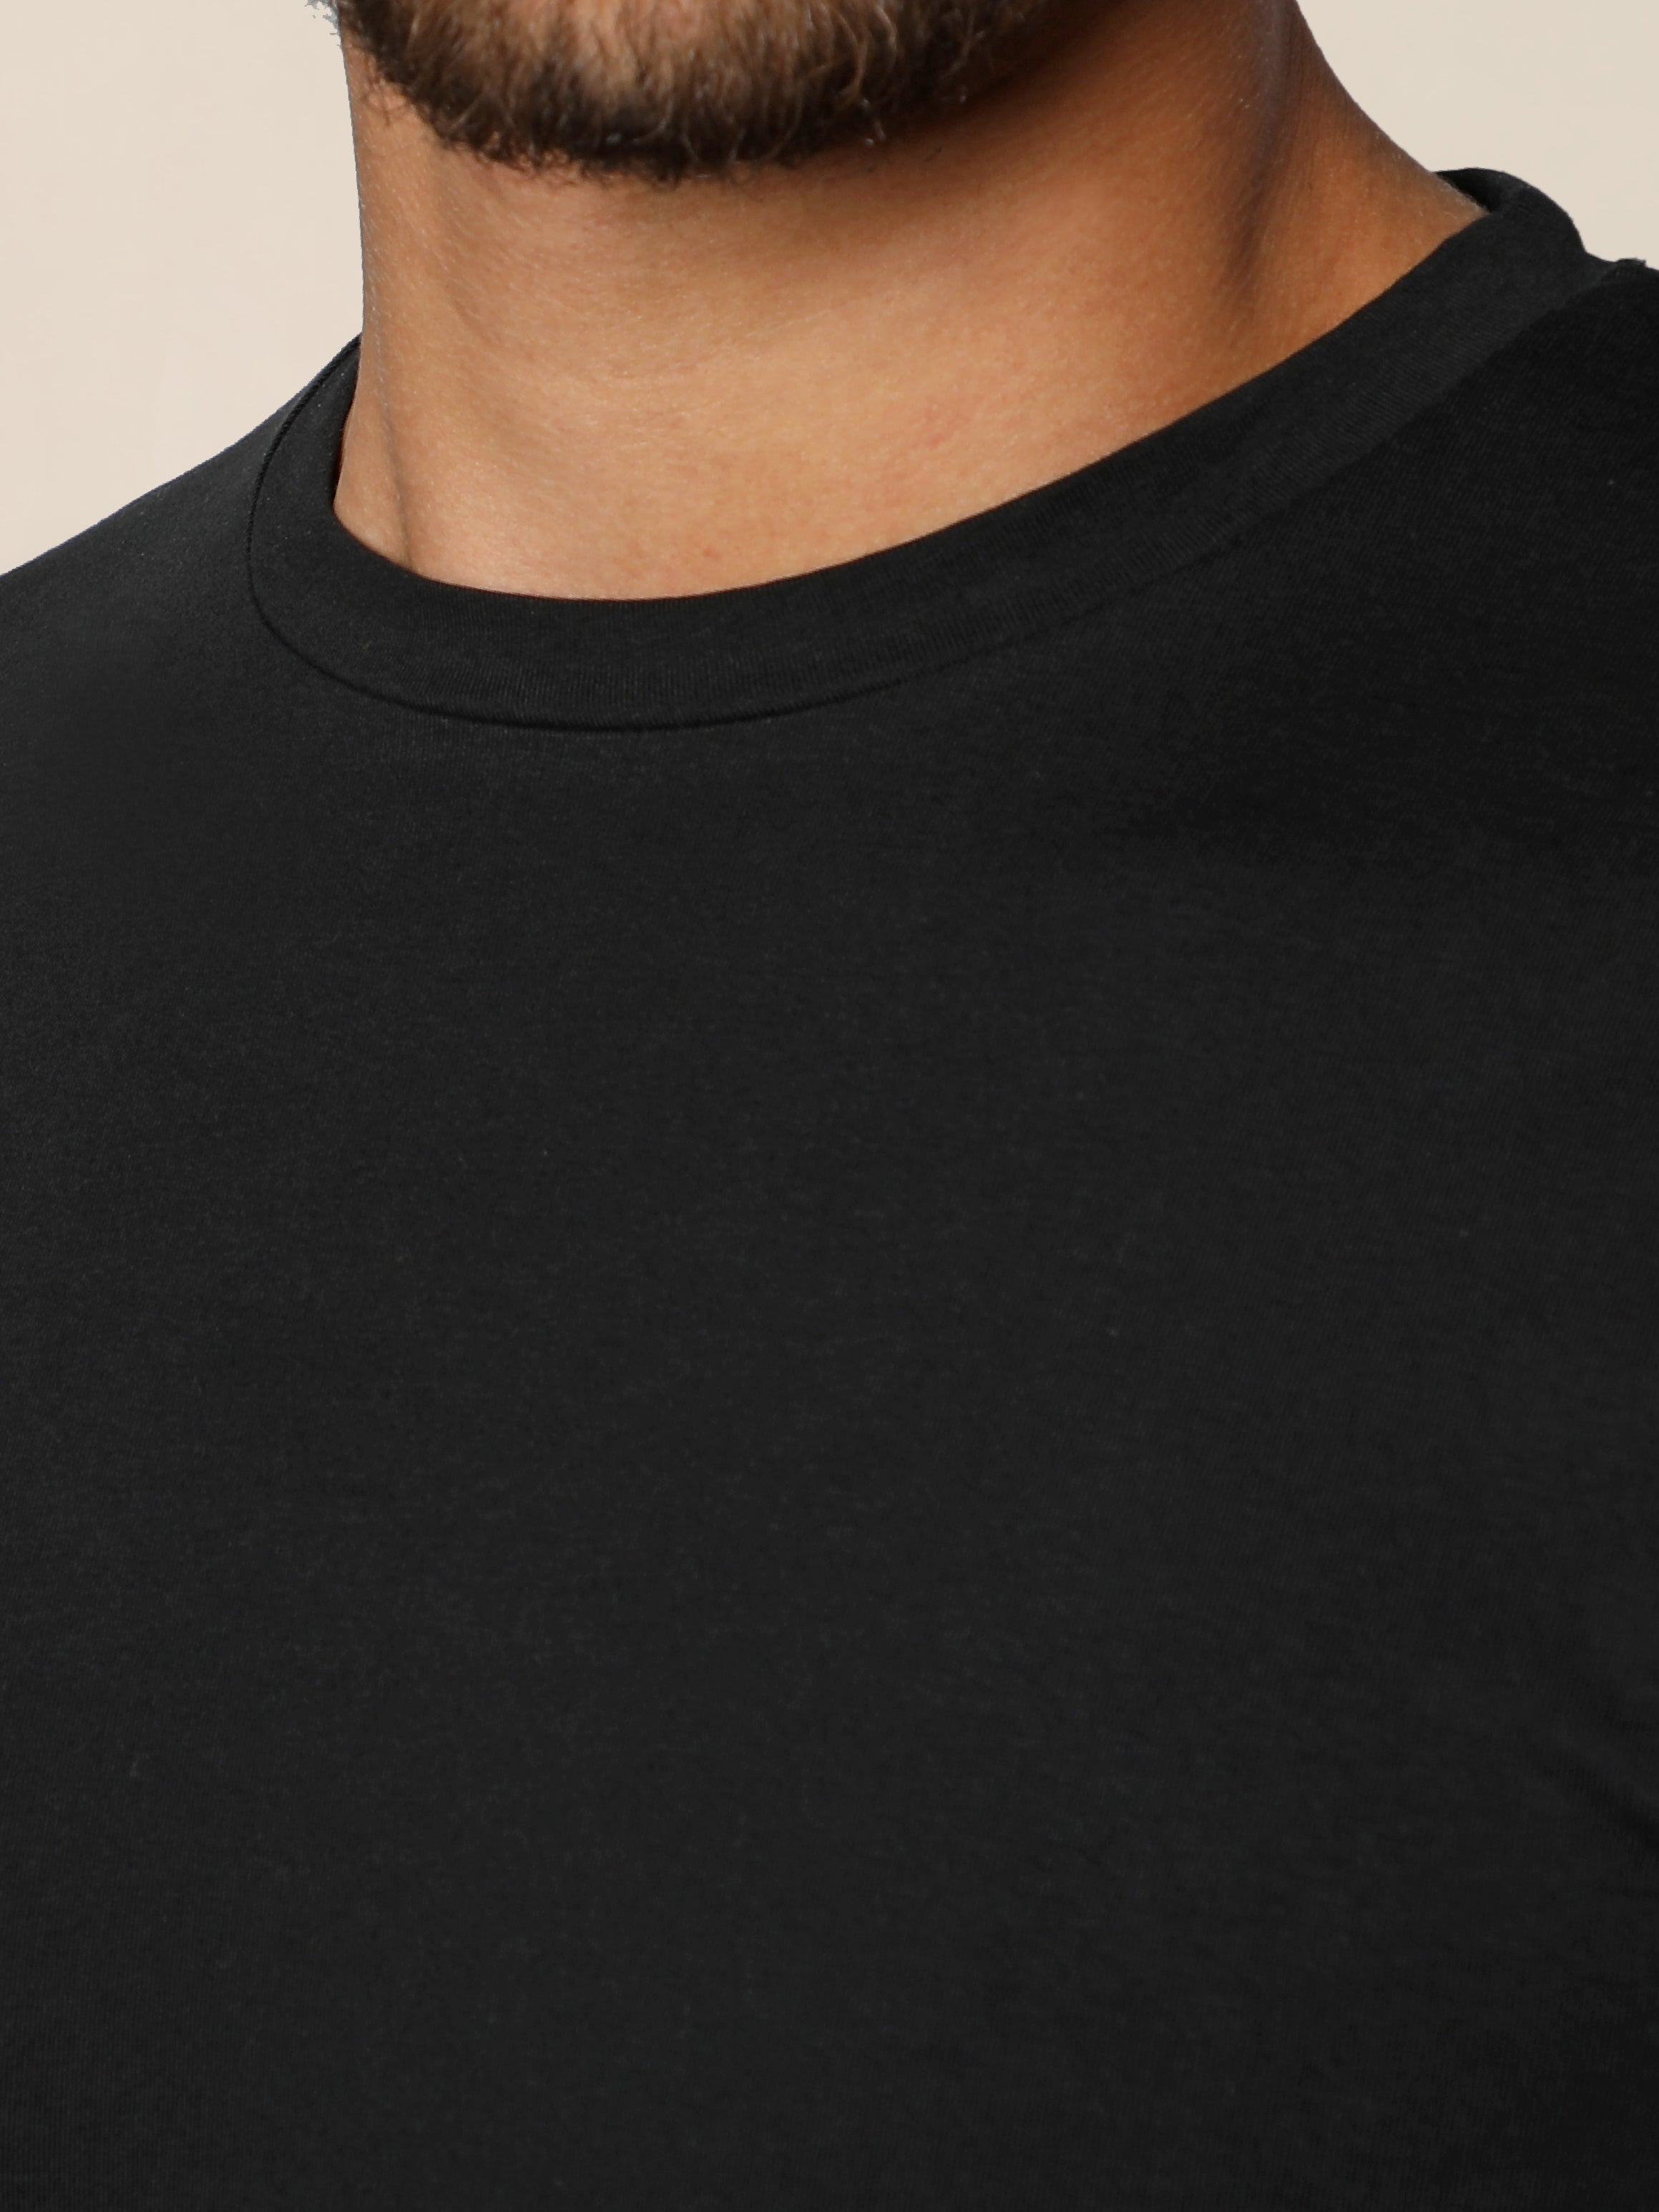 Black Jack Dapper Shortsleeved Basic T-shirt With Round Neck